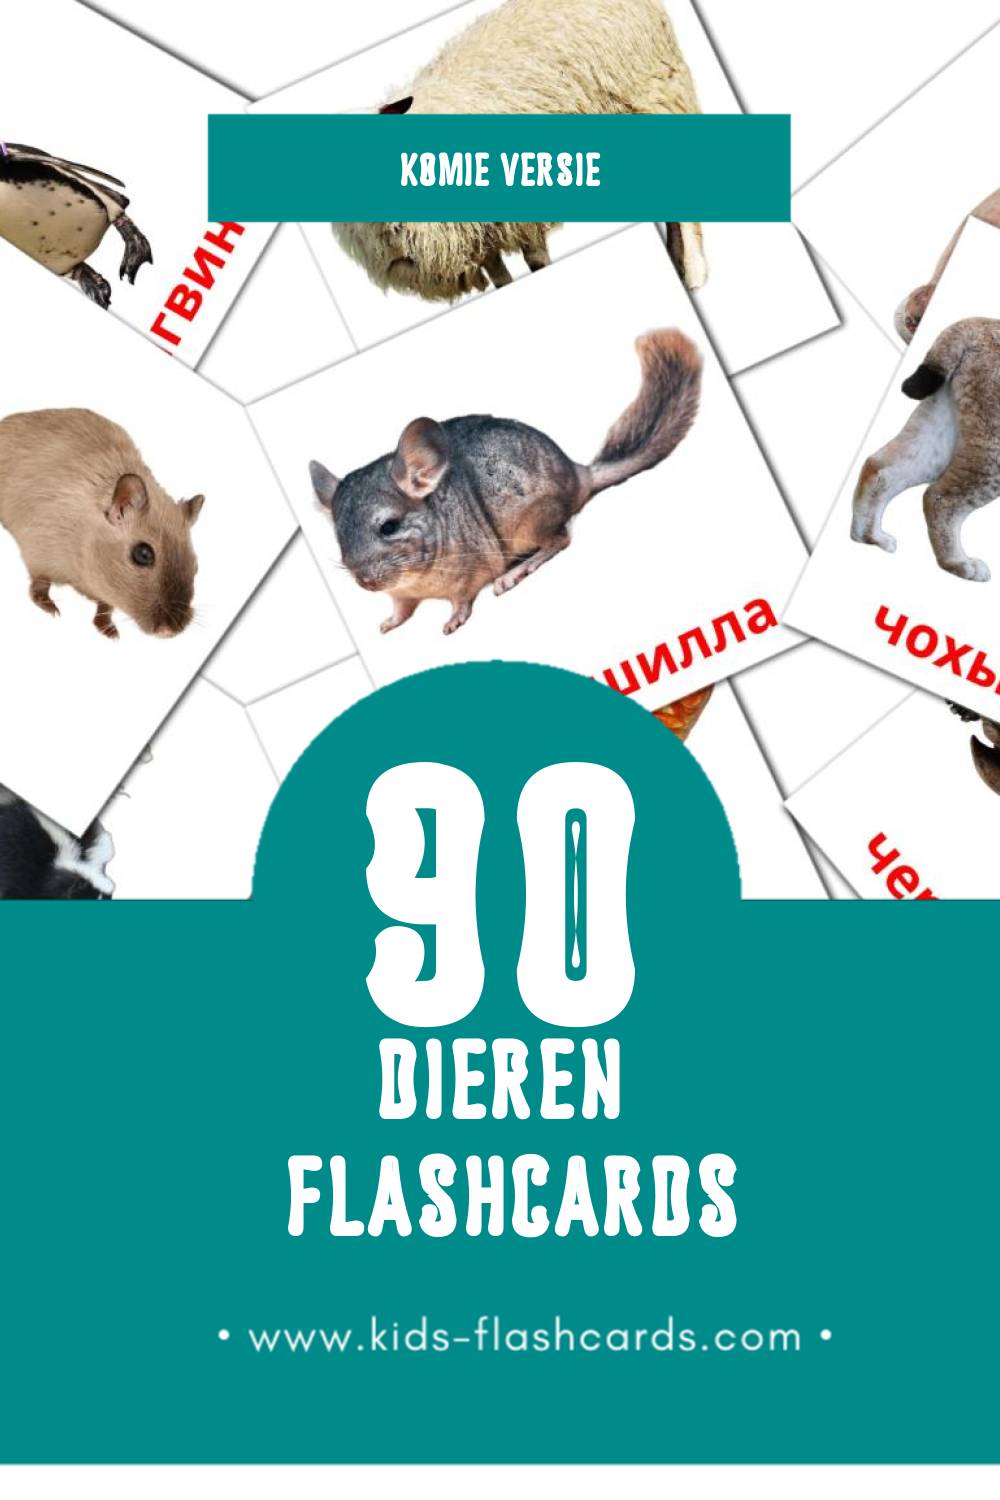 Visuele пемöсъяс Flashcards voor Kleuters (90 kaarten in het Komi)